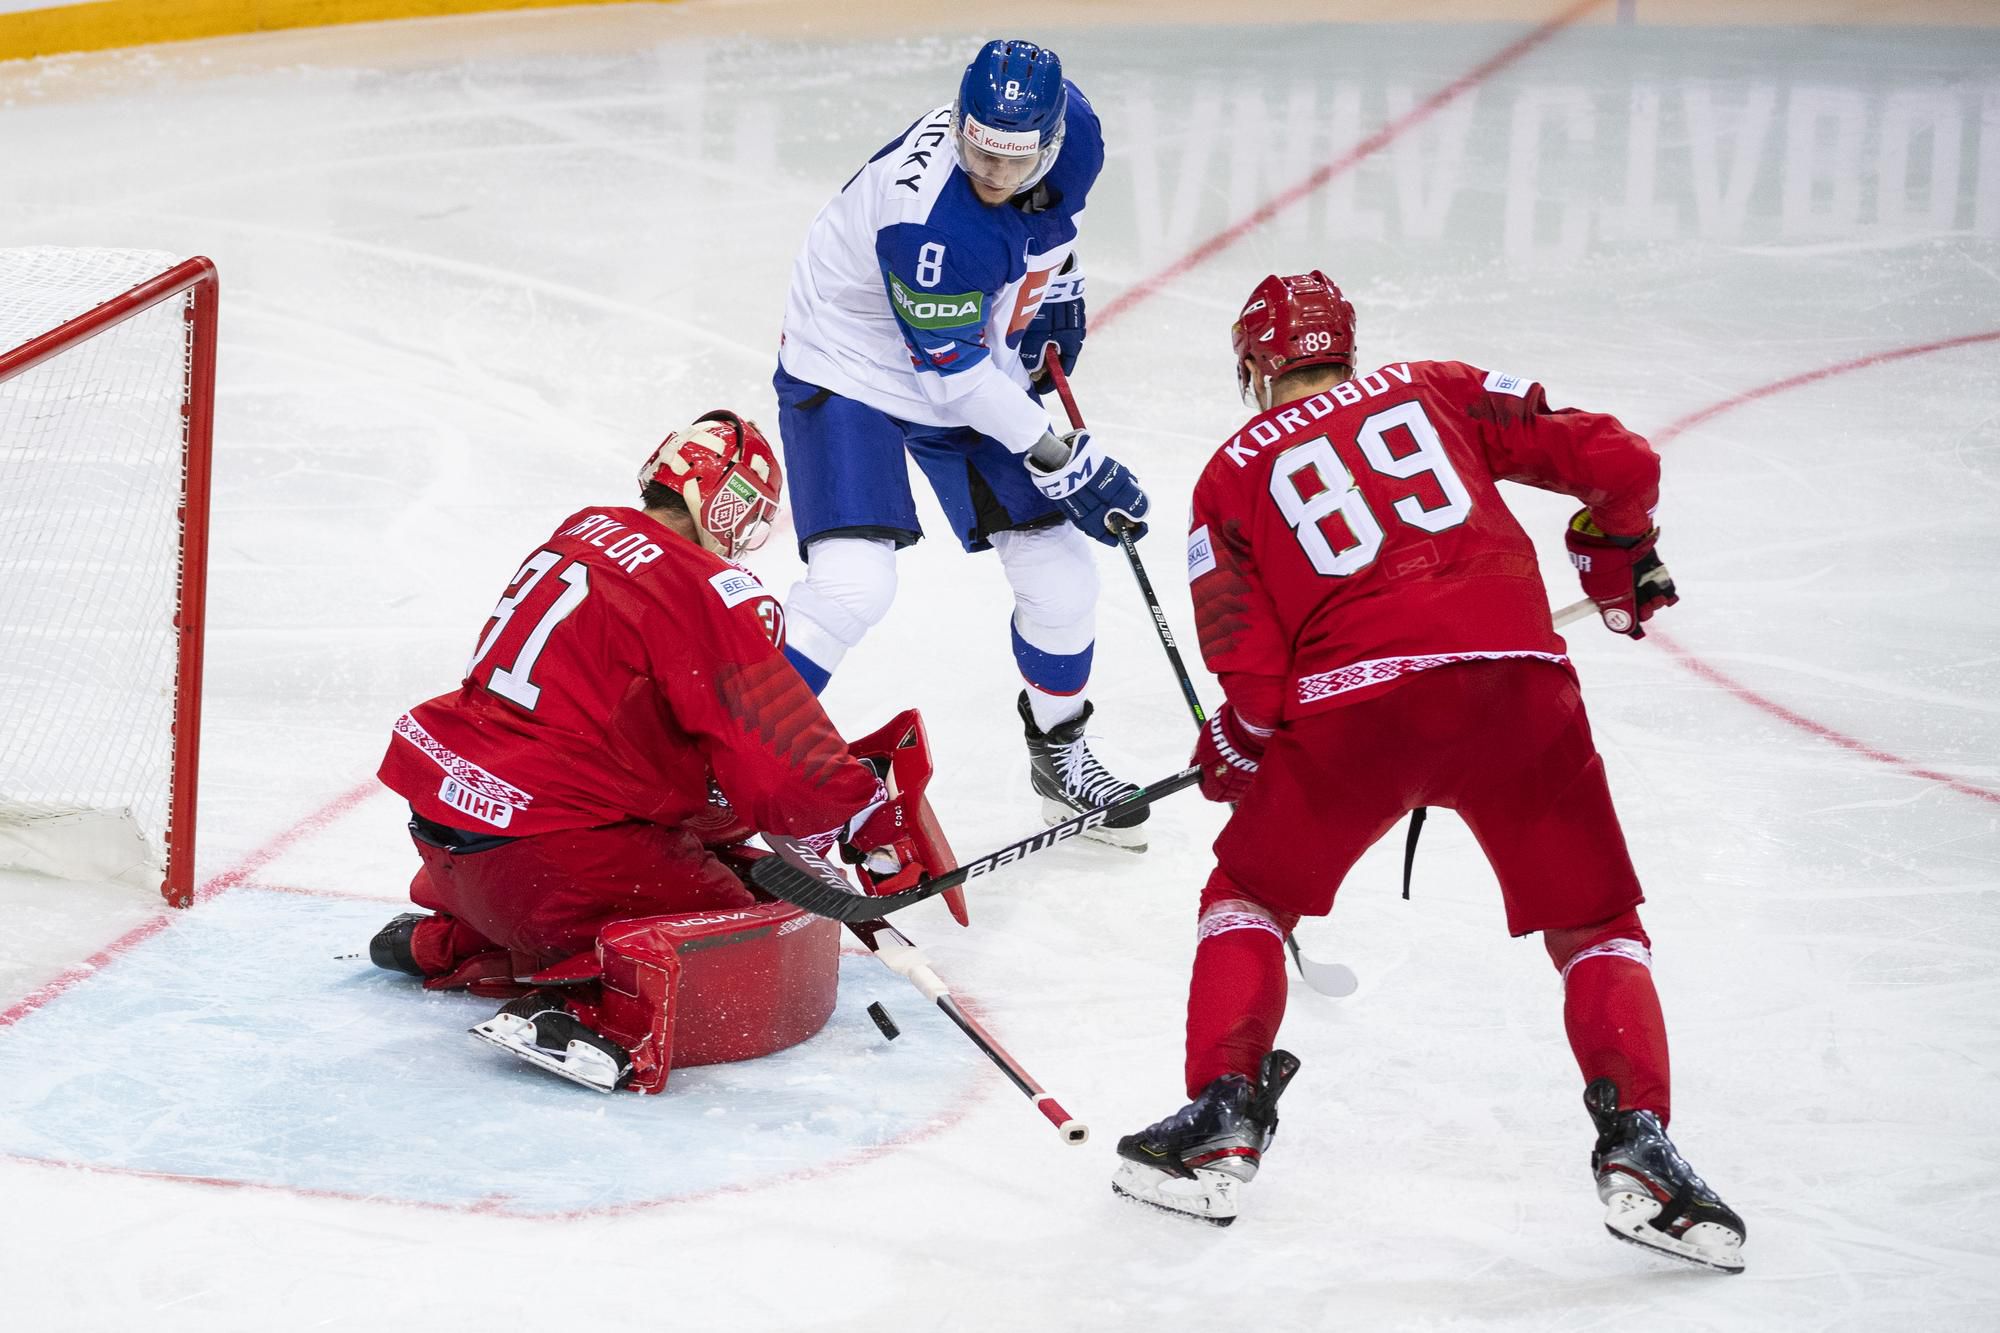 MS v hokeji 2021: Bielorusko - Slovensko (Zľava brankár Danny Taylor, Pavol Skalický a Dmitrij Korobov)